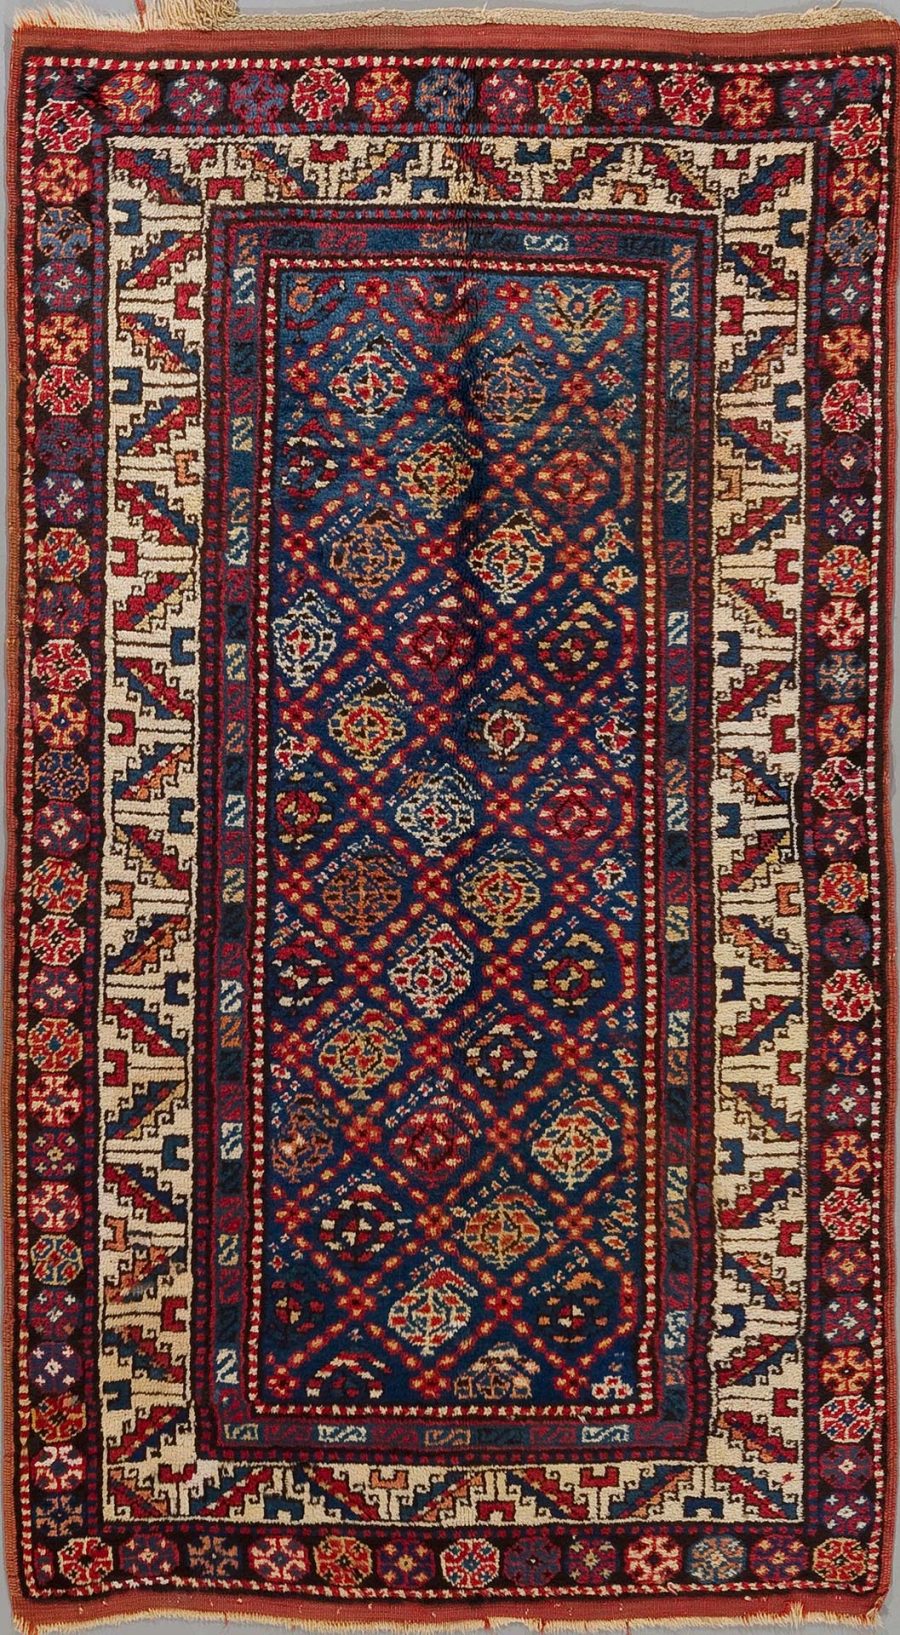 Alt-Text: Traditioneller orientalischer Teppich mit komplexem Muster in Blau, Rot und Beige, umgeben von mehreren verzierten Bordüren.